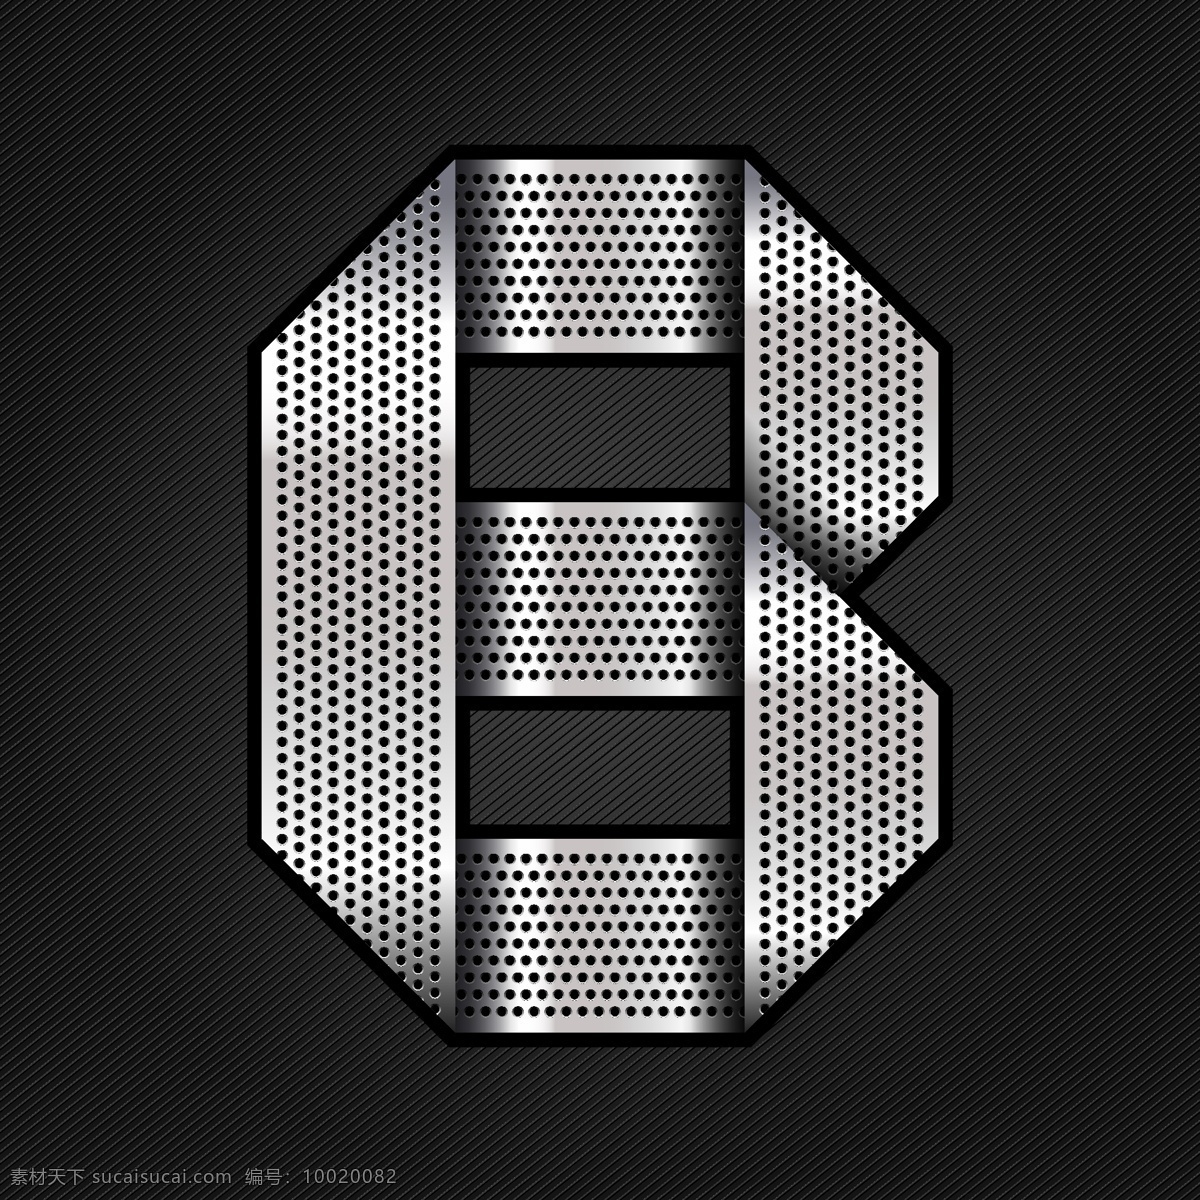 金属字b素材 metallic chromium alphabet with numbers24 书画文字 文化艺术 矢量素材 黑色